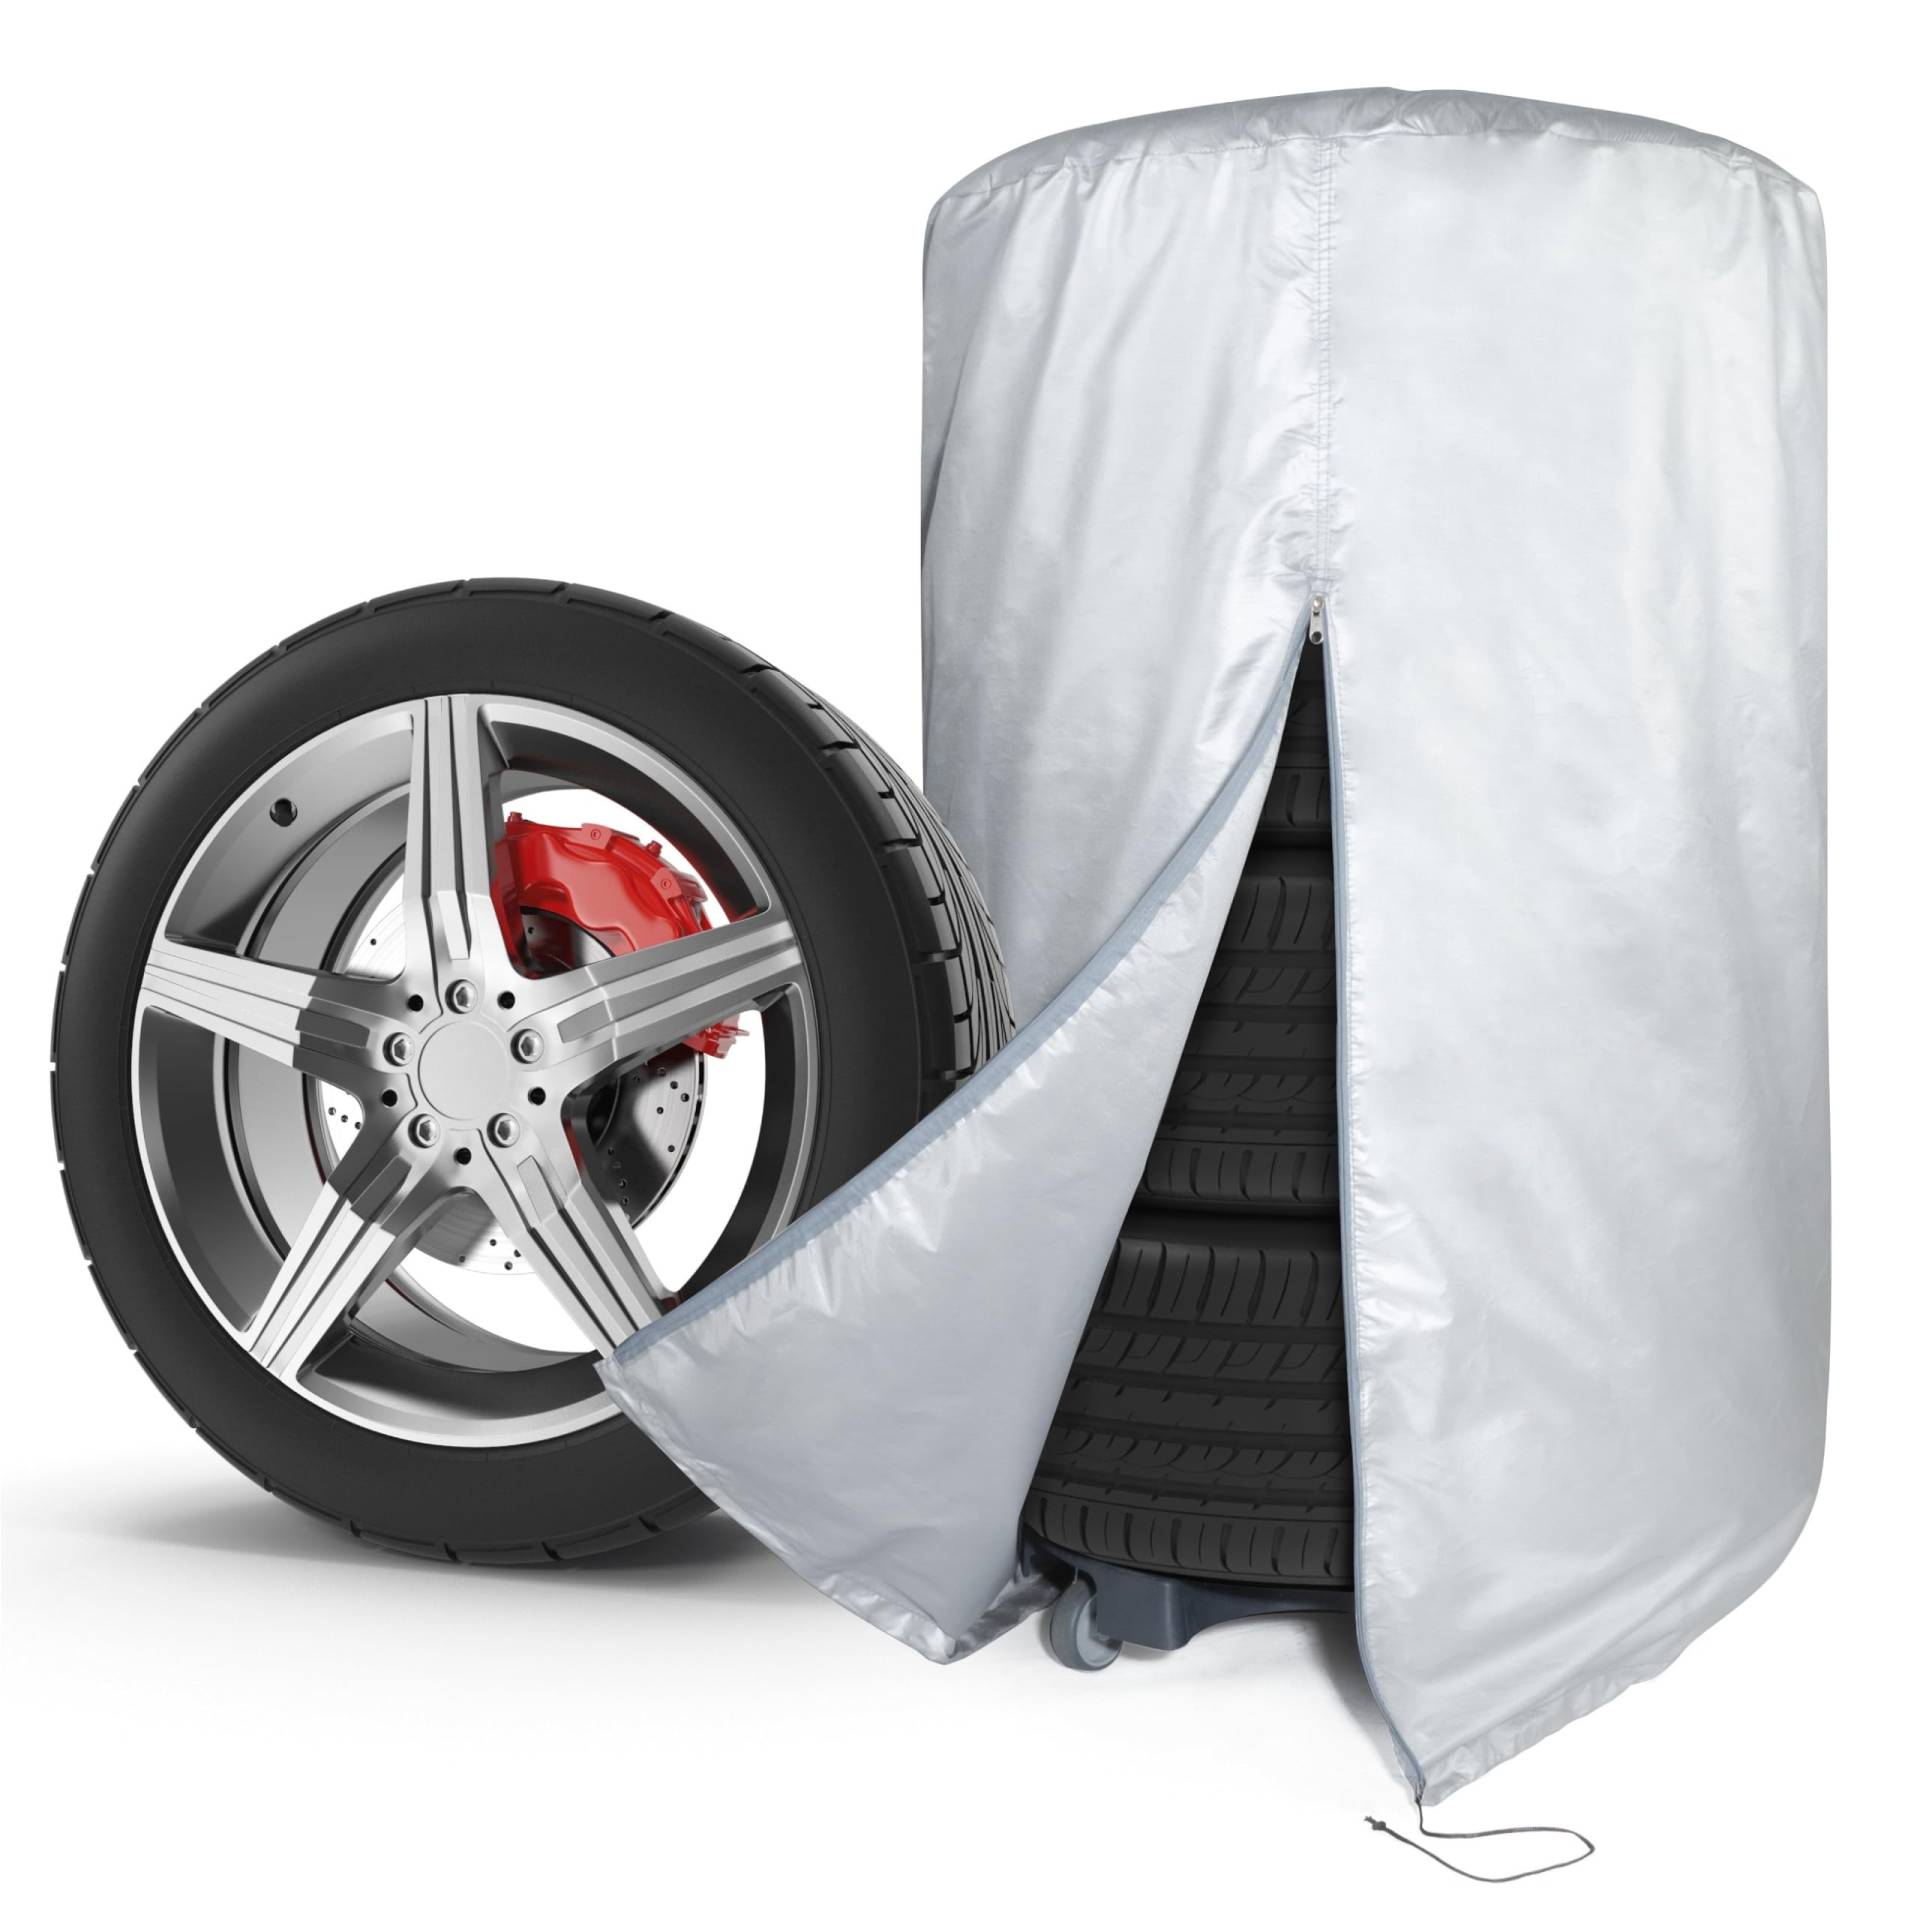 WALSER Auto Reifentasche, Autoreifen Aufbewahrung für 4 Reifen, Autoreifen Hülle, Autoreifen Tasche, Reifen Aufbewahrung, Reifen Hülle, Reifen Sack für Reifen Lagerung, Reifen Tasche silber 17-18 Zoll von Walser